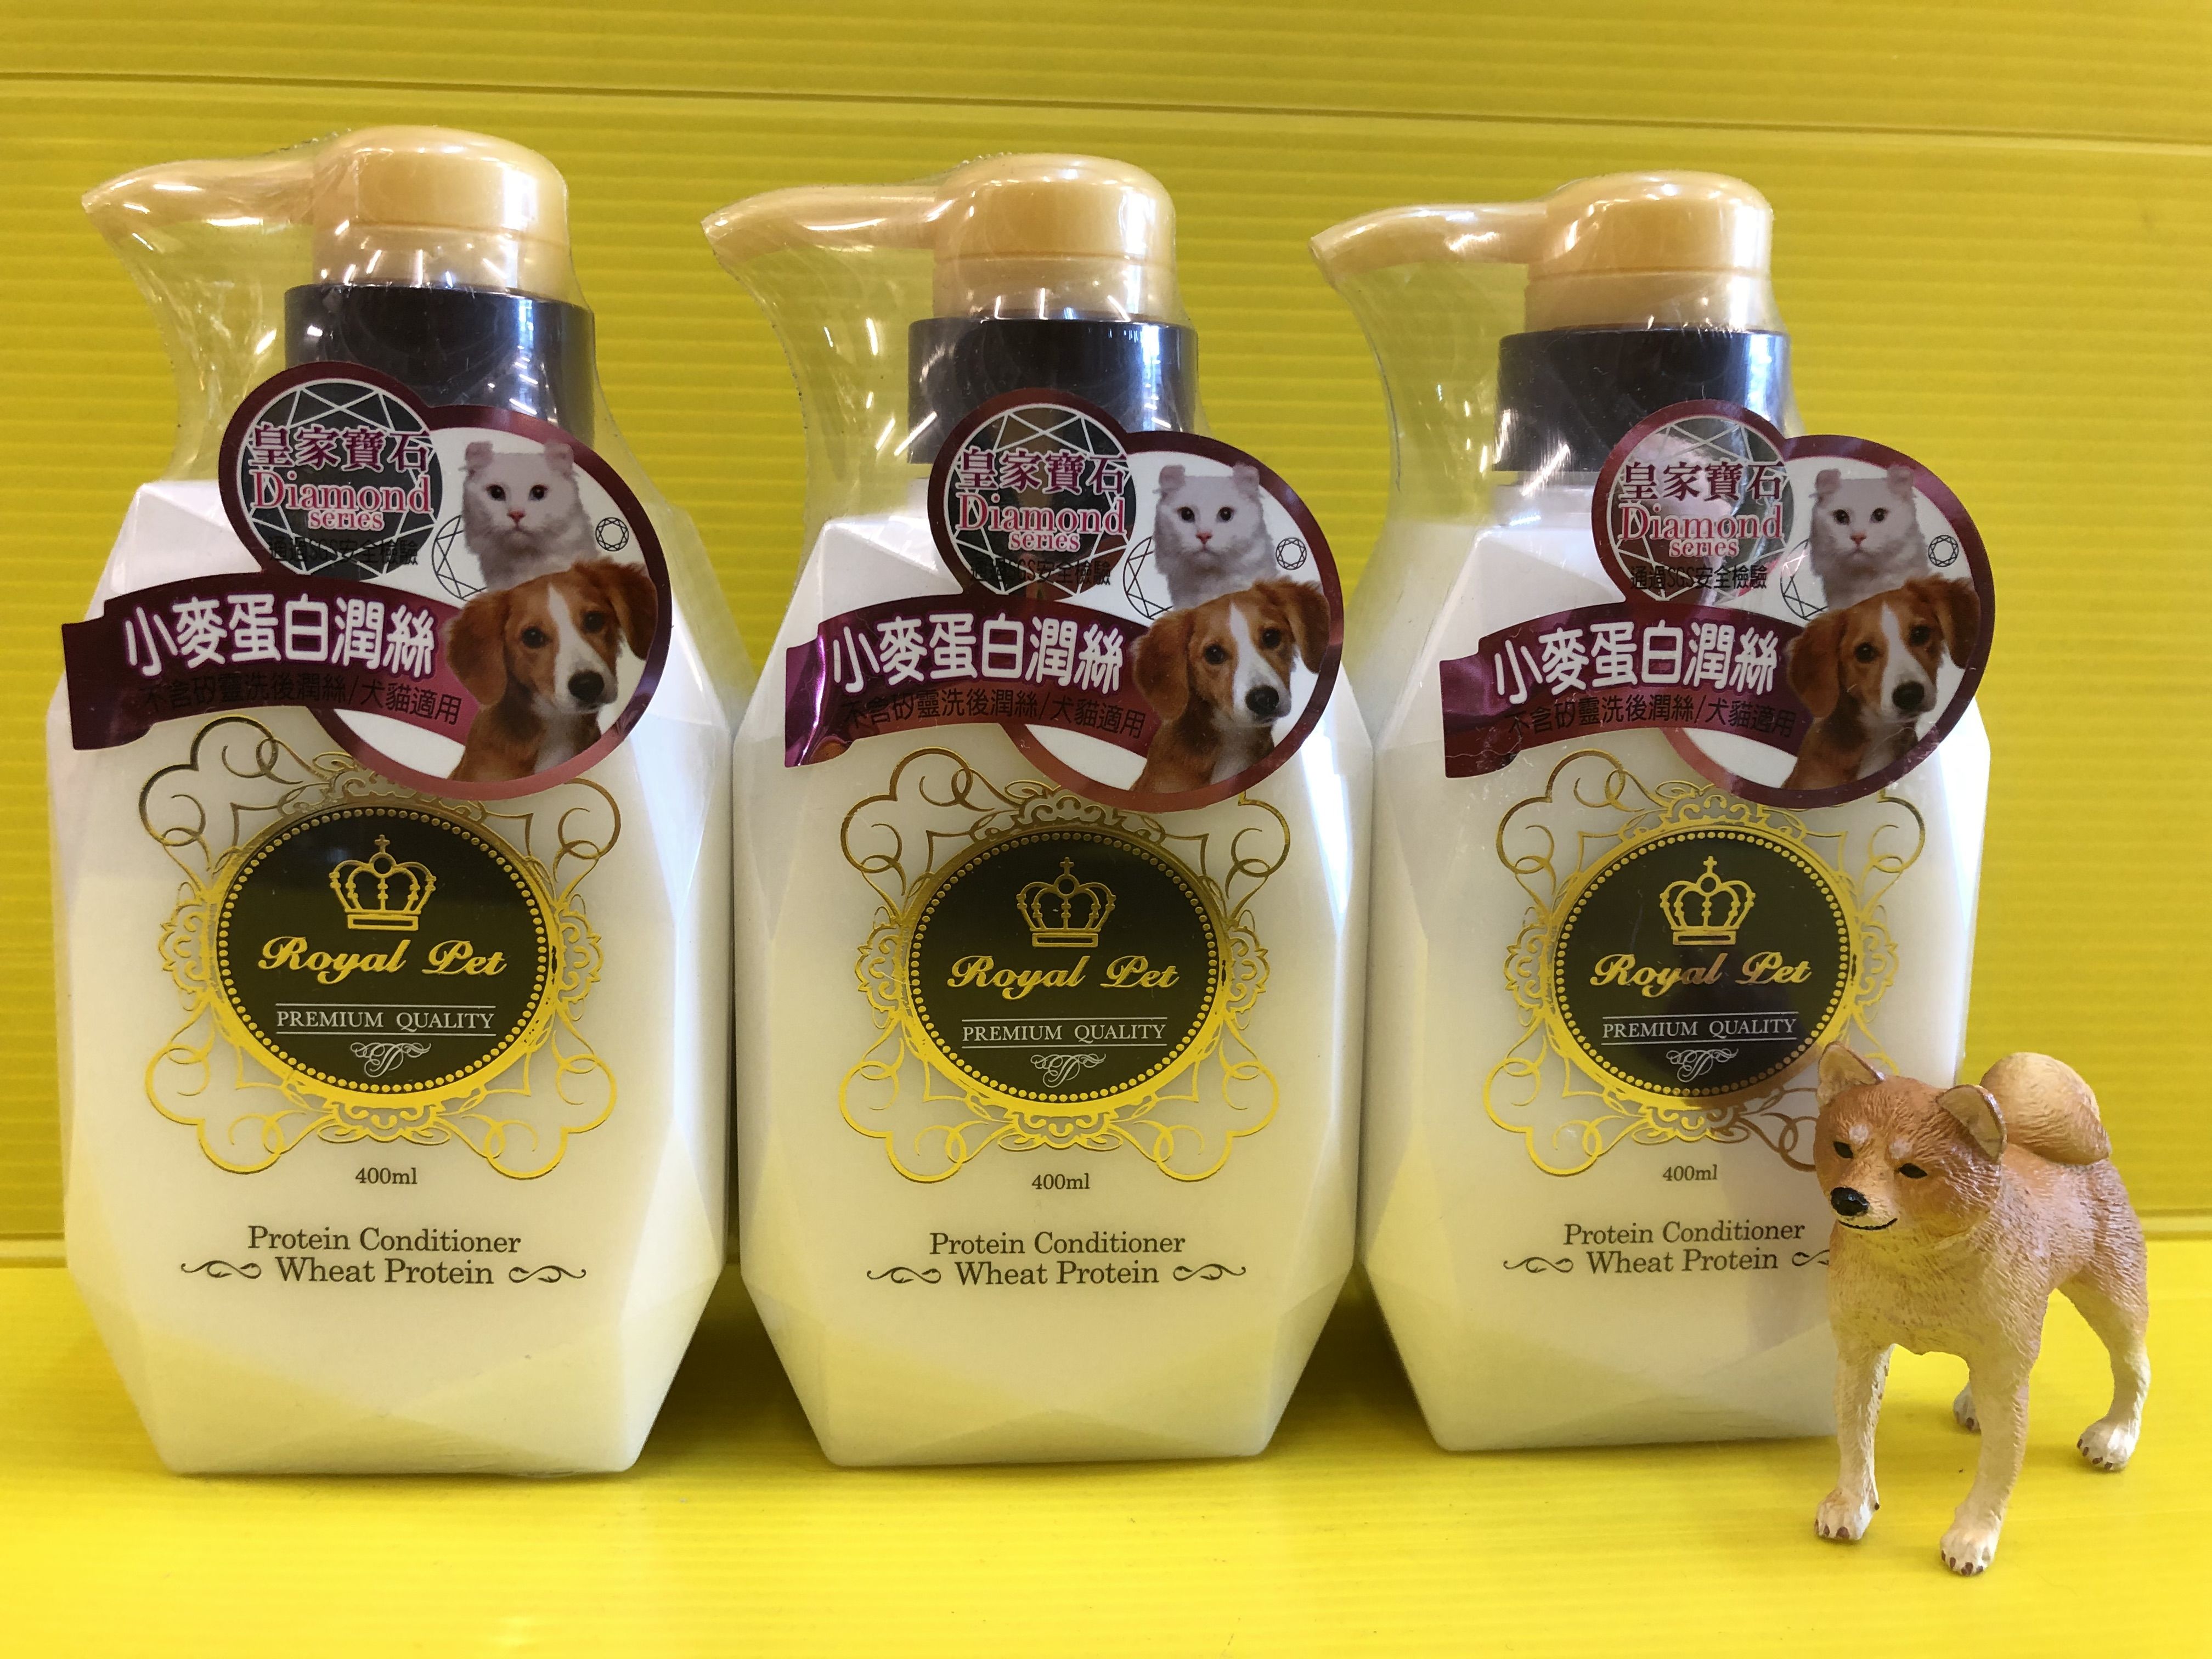 ✪四寶的店n✪Royal Pet 皇家寶石 小麥蛋白潤絲 富含微量元素、維他命E、F天然保溼因子供給毛皮 肌膚所需營養。